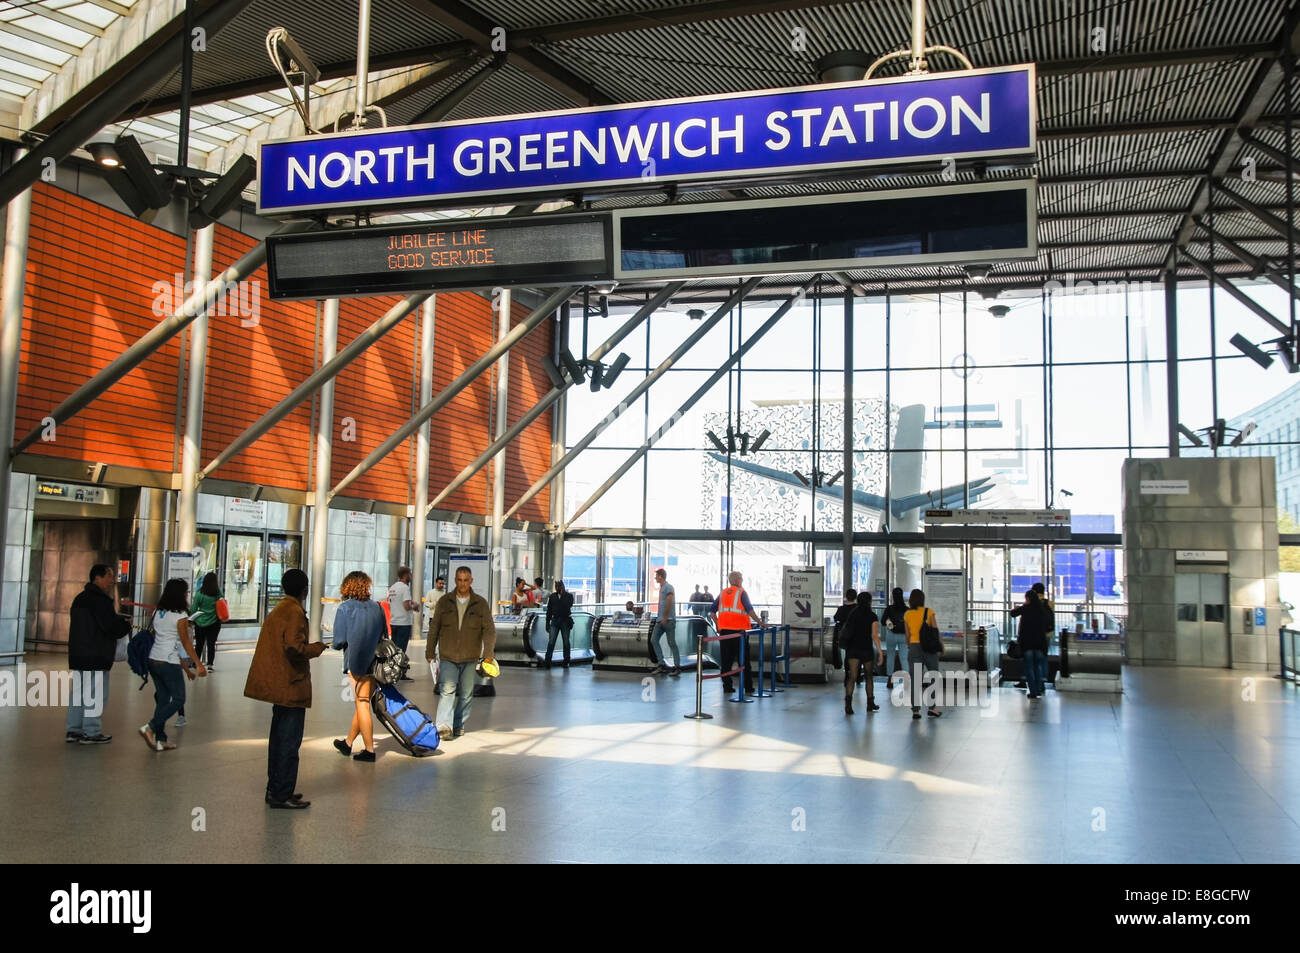 La station de métro North Greenwich Londres Angleterre Royaume-Uni UK Banque D'Images